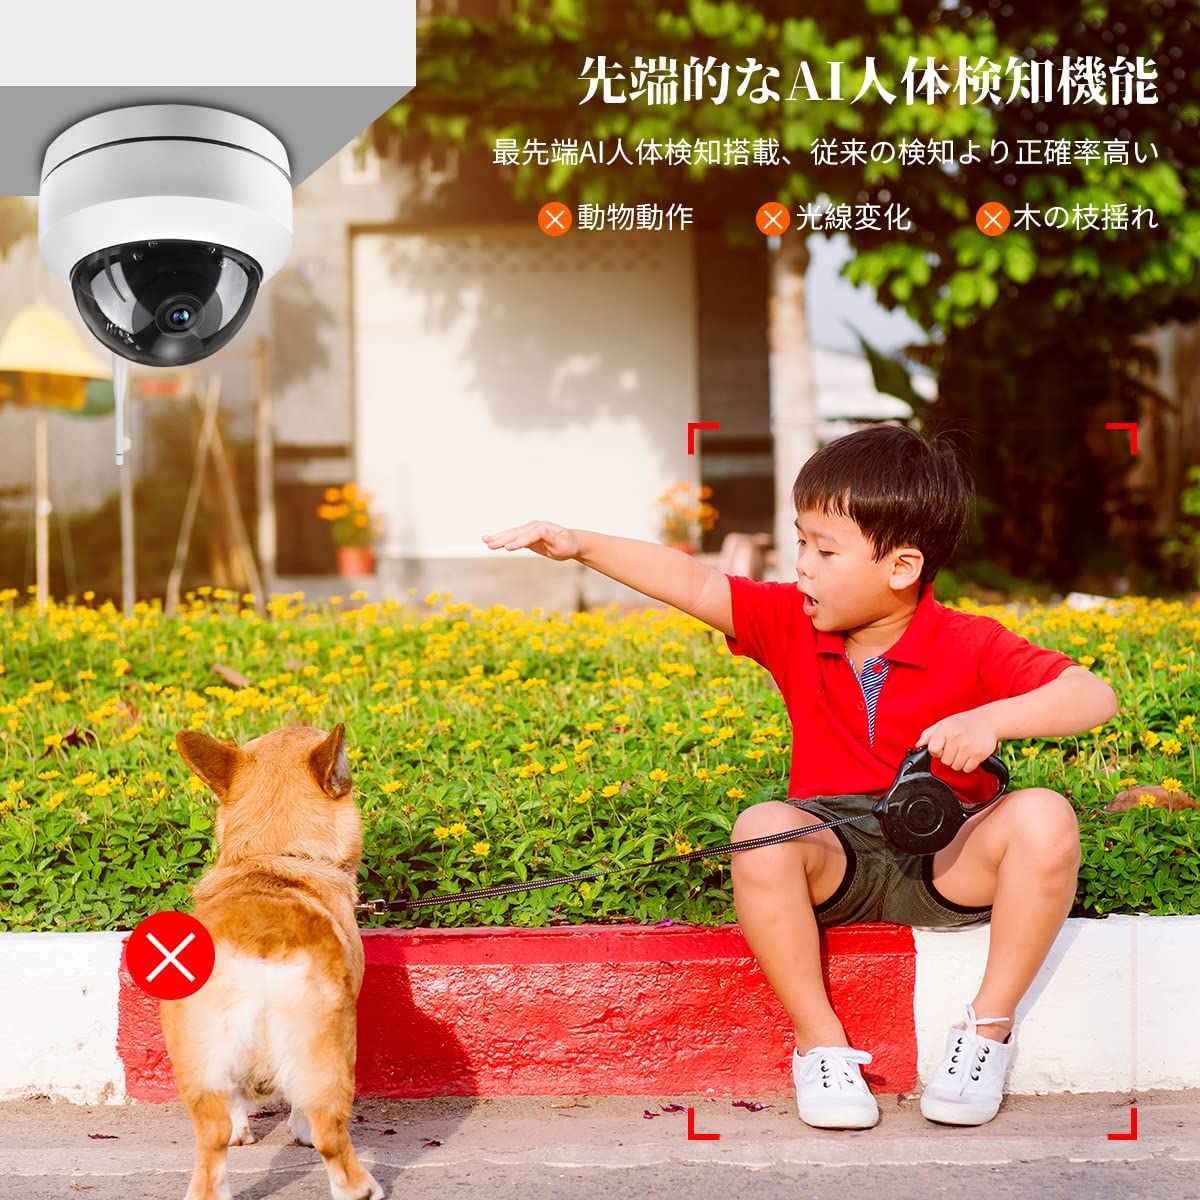 防犯カメラ 監視カメラ 屋外 家庭用 ワイヤレス wifi 録画 ネット不要